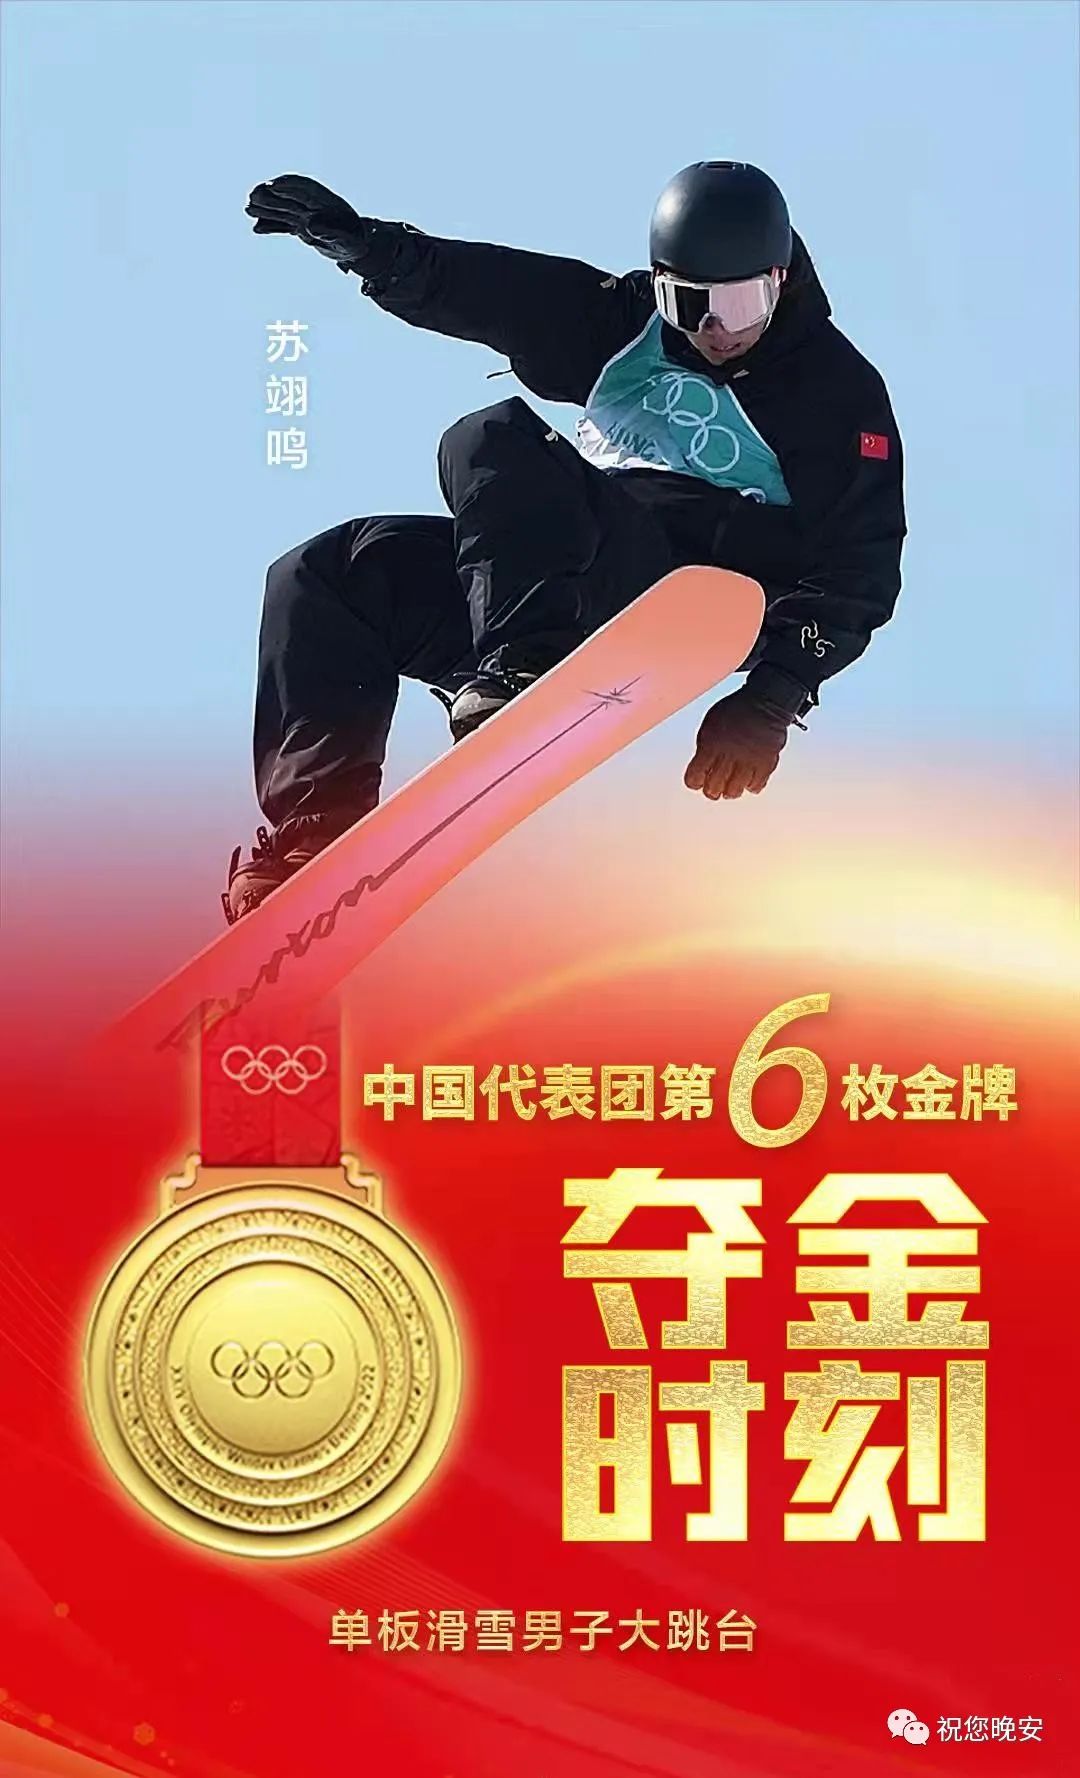 北京冬奥第1金图片